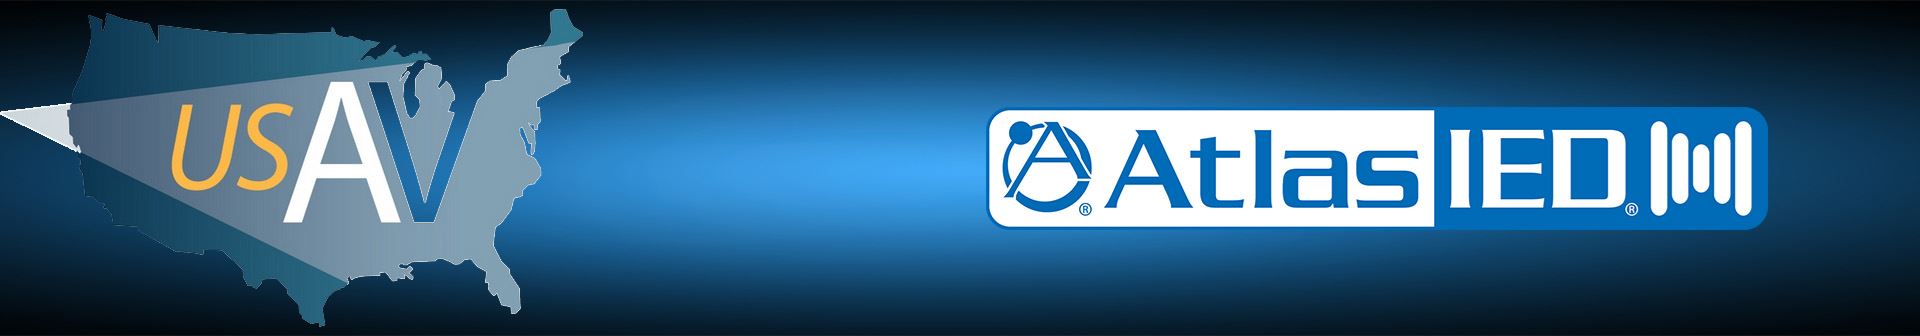 AtlasIED Joins USAV; Strengthens its Alliances with Commercial AV Integrators Nationwide